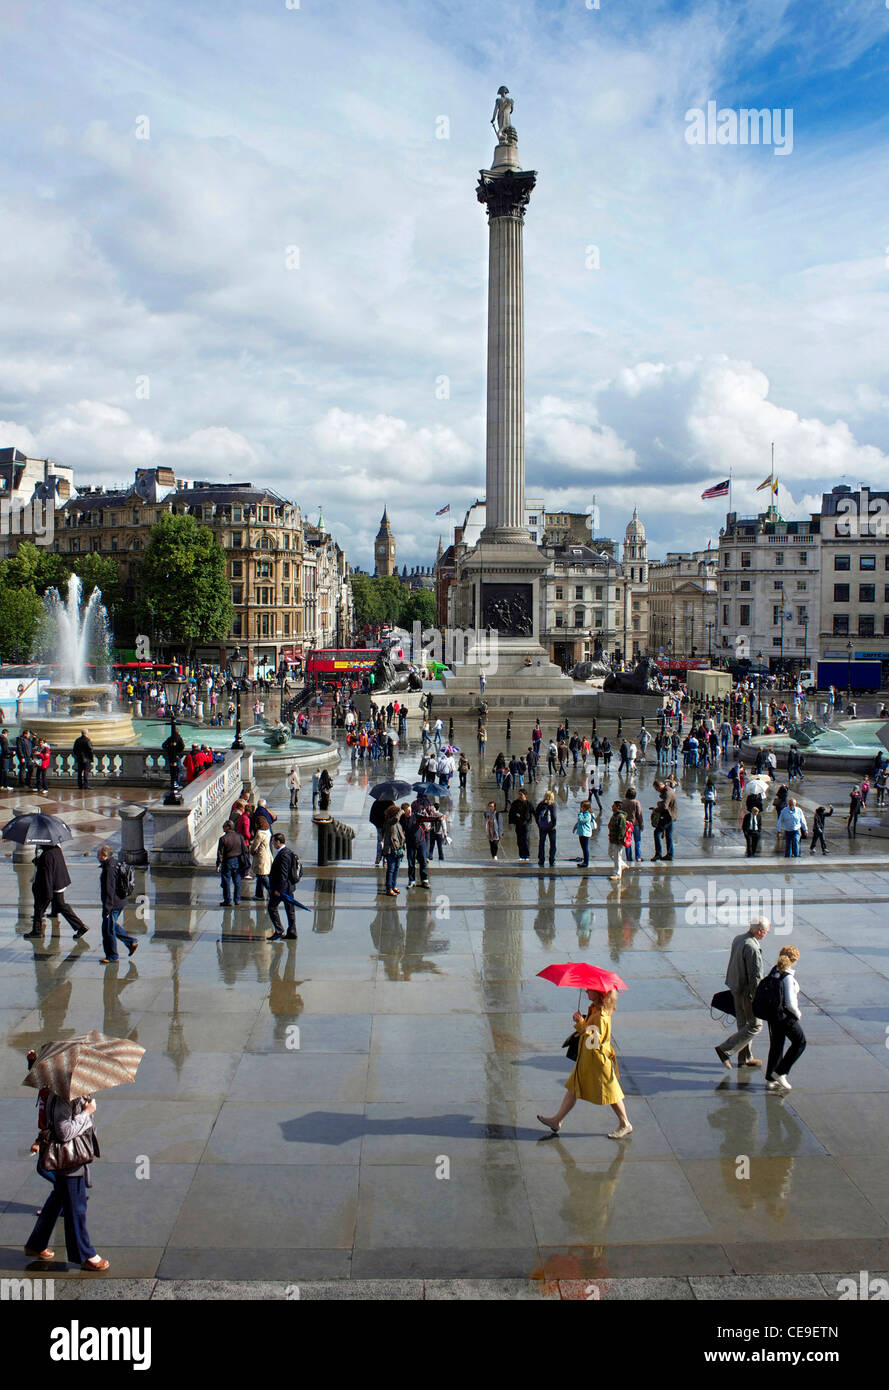 Menschen immer noch mit Sonnenschirmen im Regen, als die Sonne beginnt zu leuchten auf dem Trafalgar Square, London, England. Stockfoto